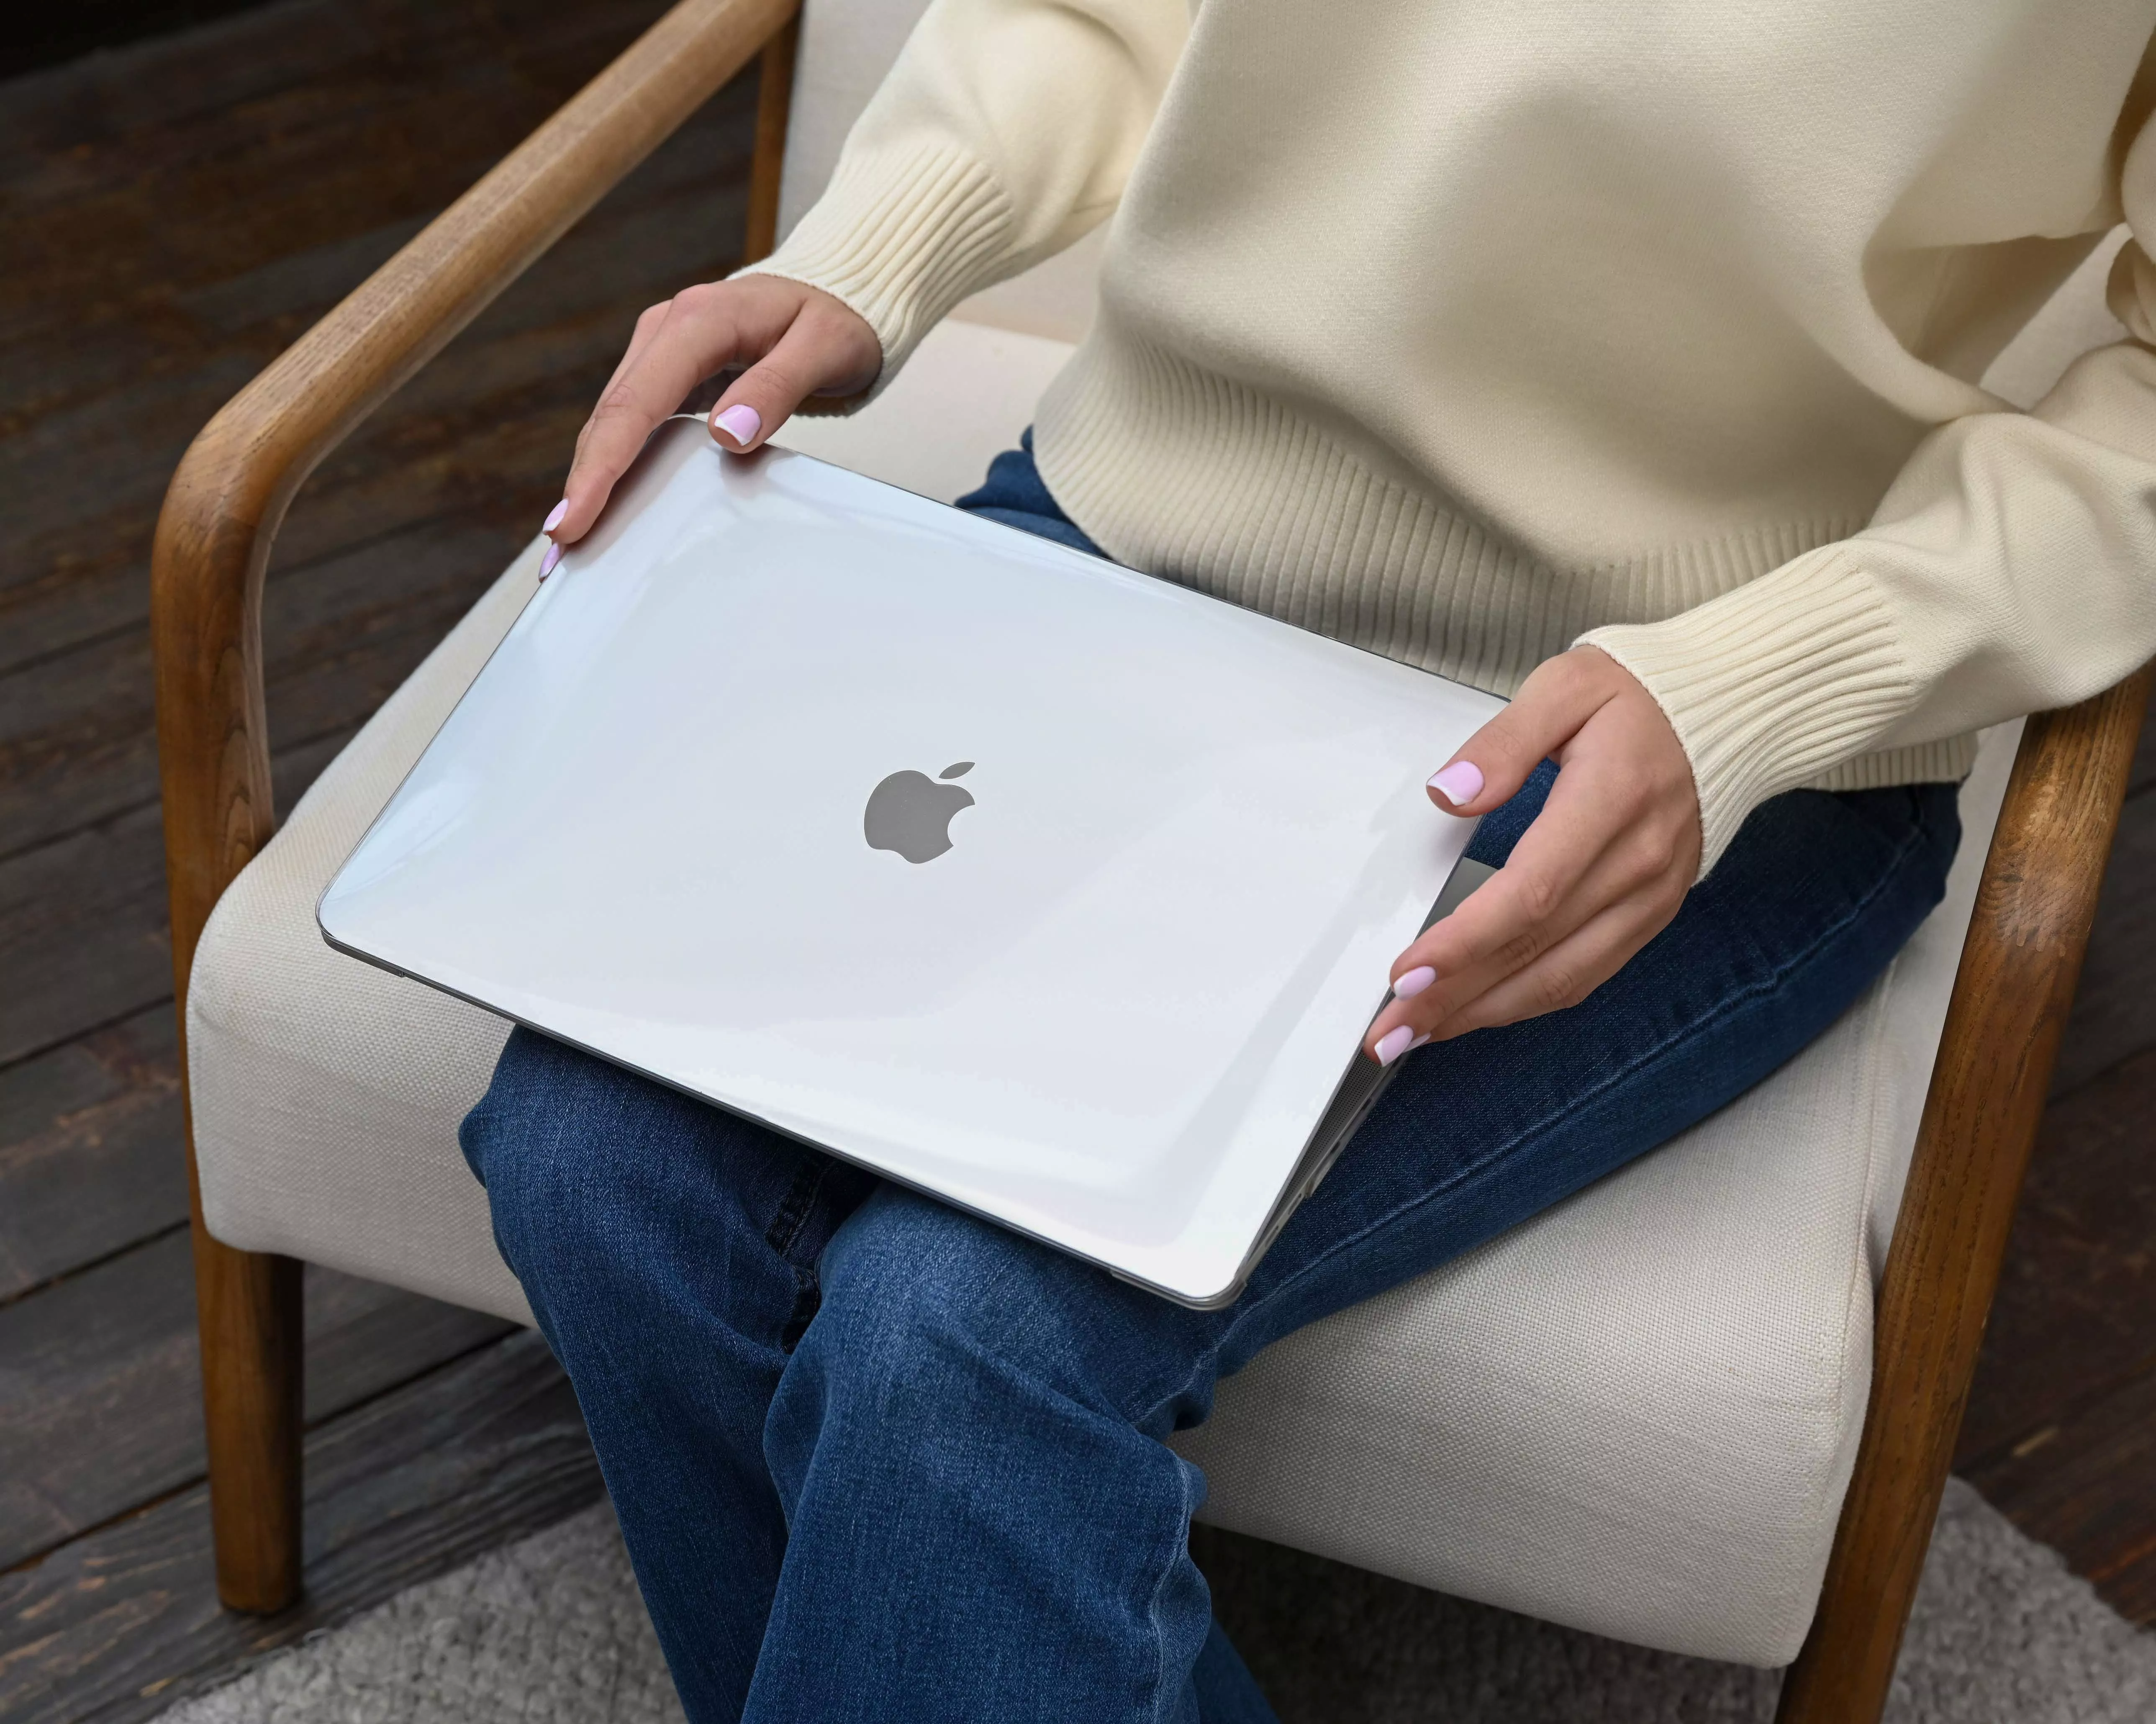 Защитный чехол uBear Vision Case для MacBook Pro 16